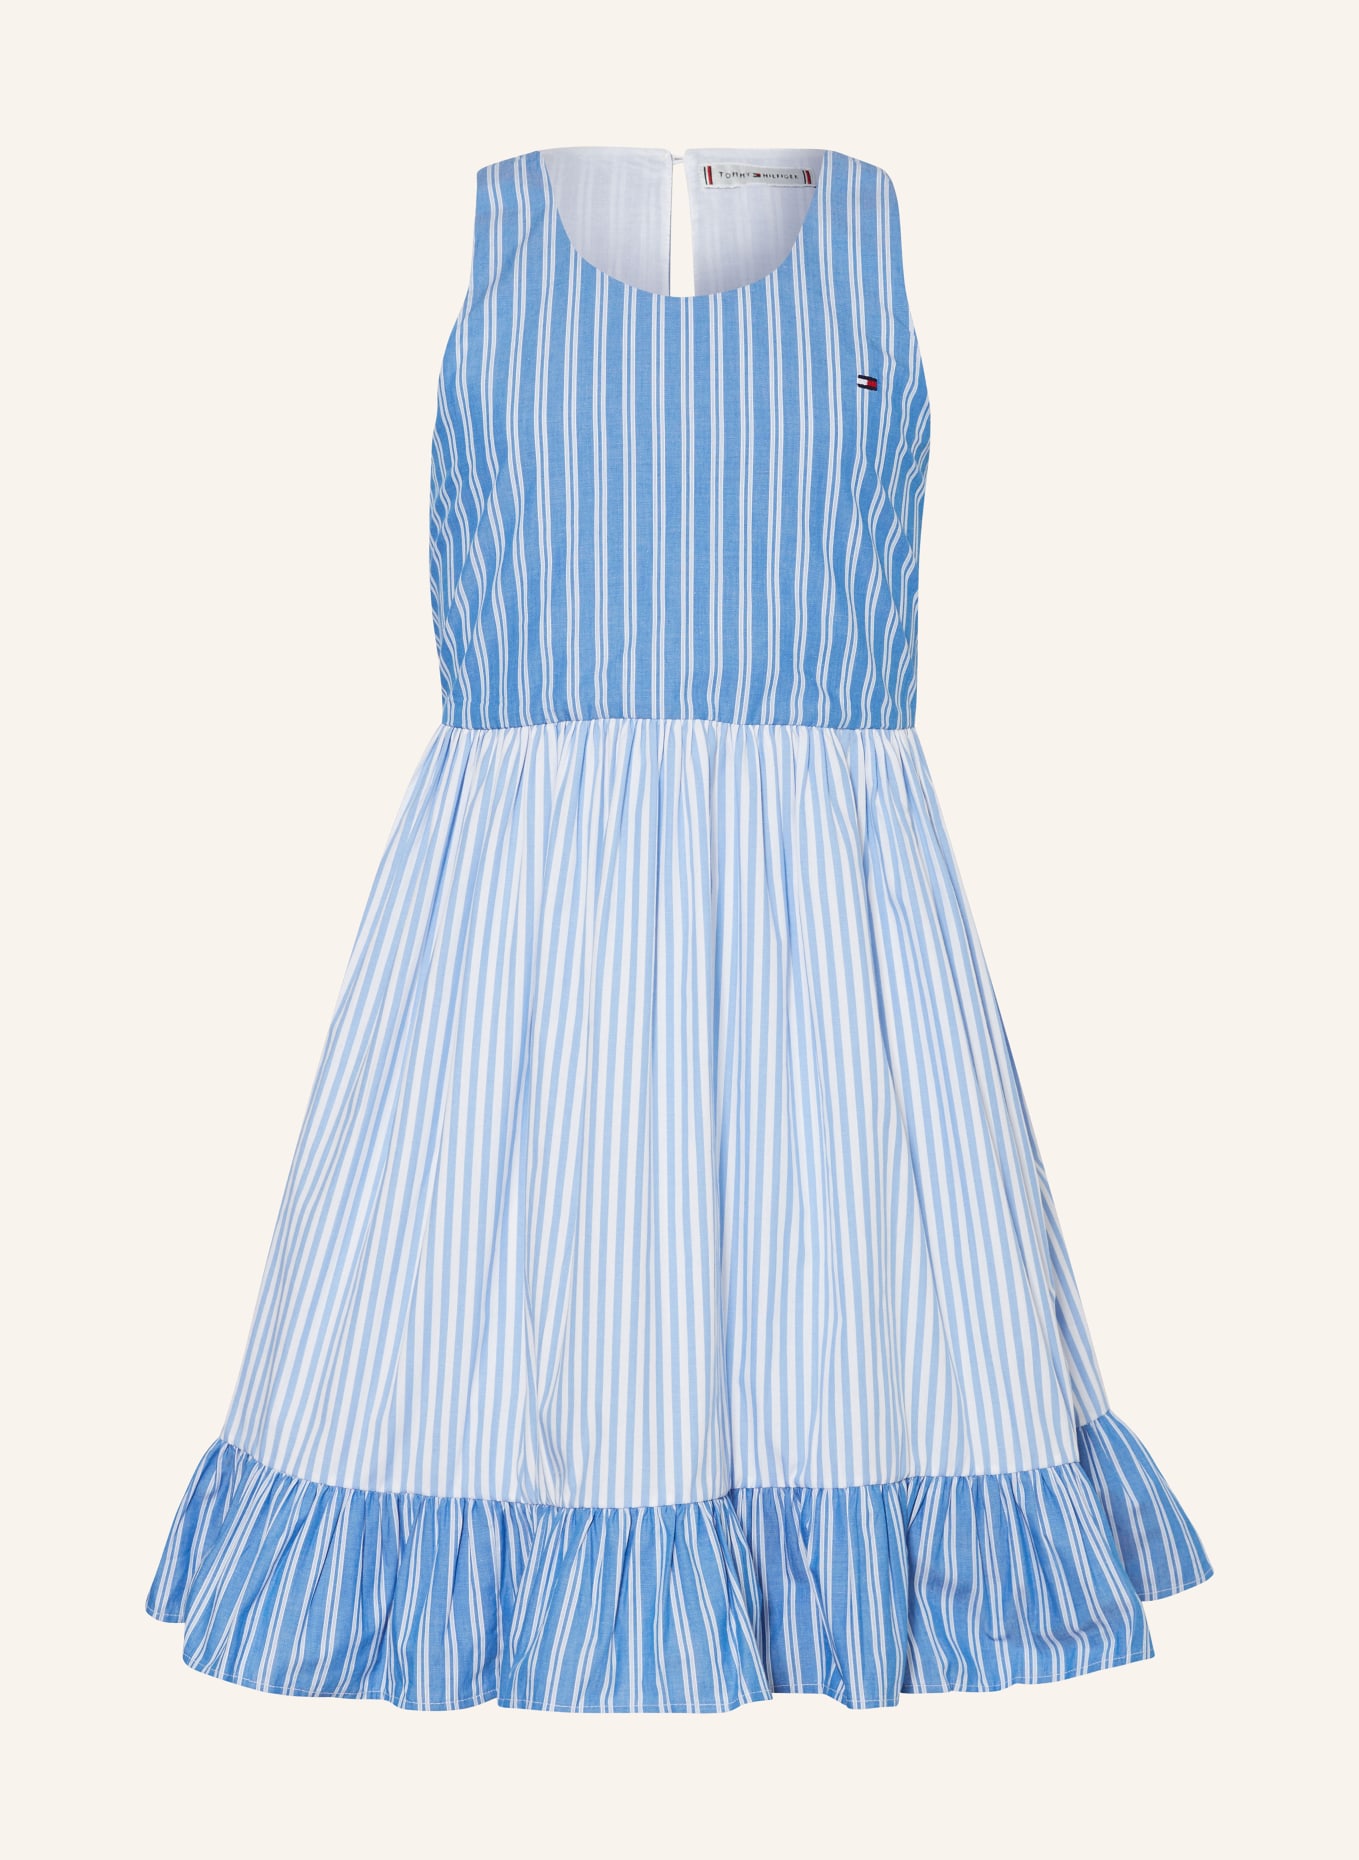 TOMMY HILFIGER Kleid, Farbe: BLAU/ WEISS (Bild 1)